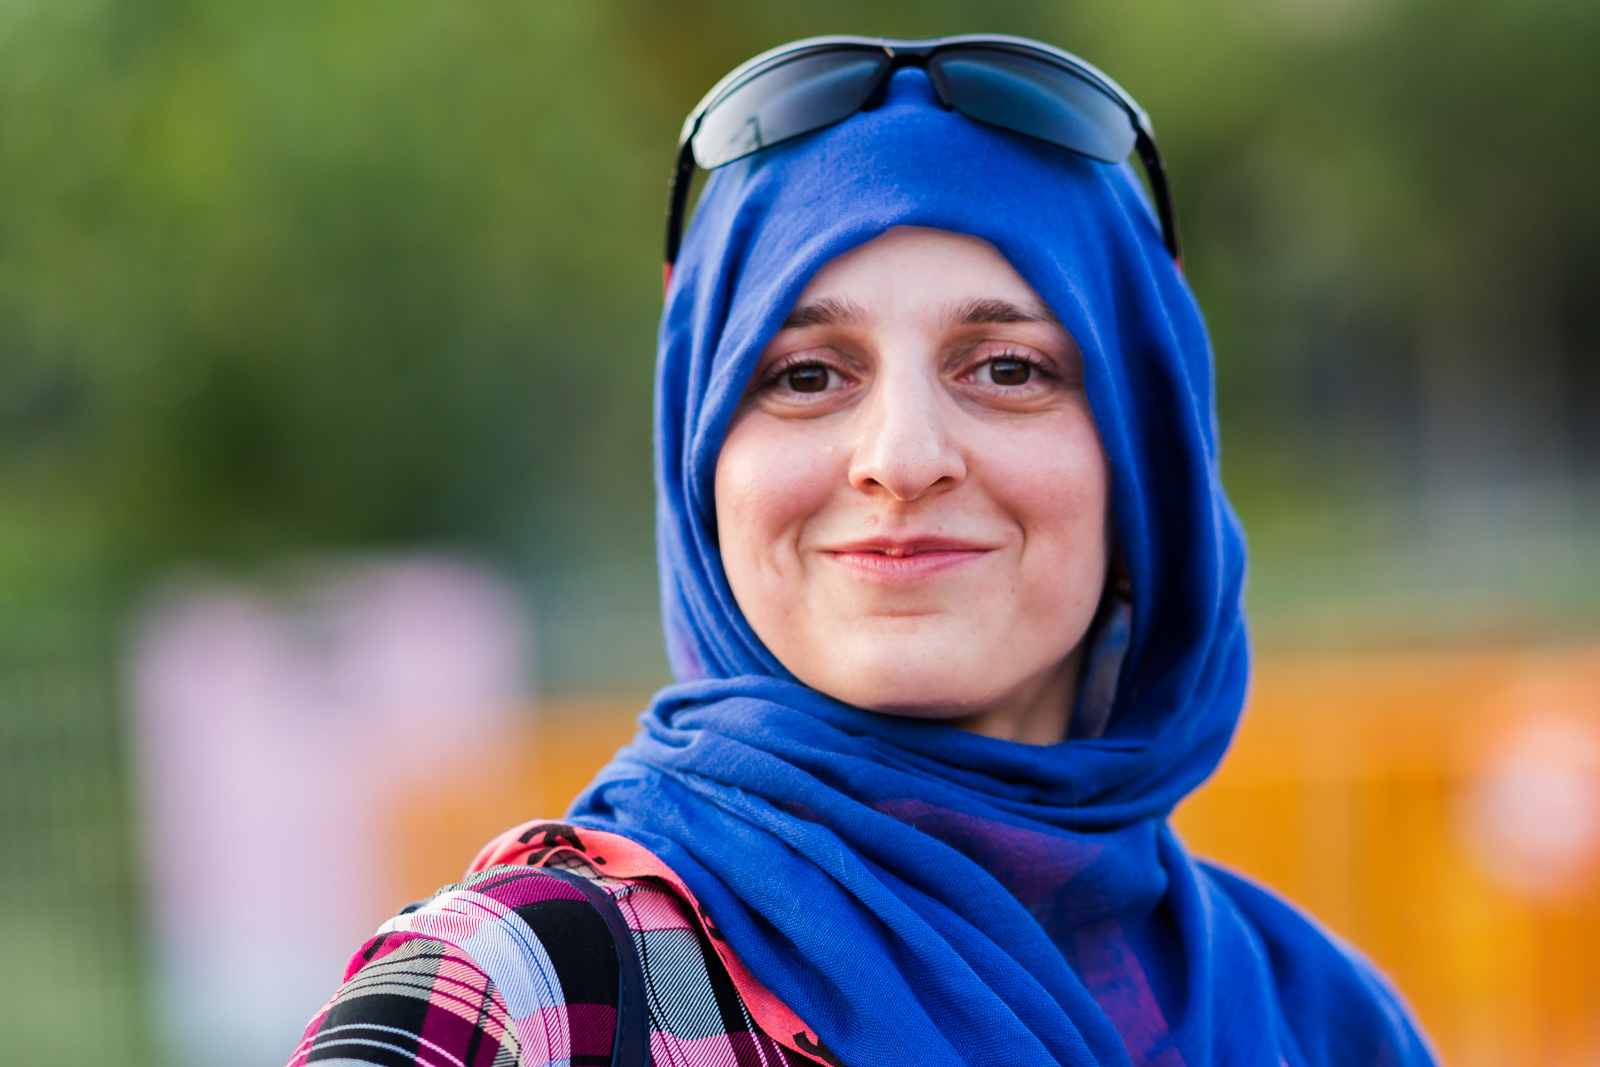 Iranian female